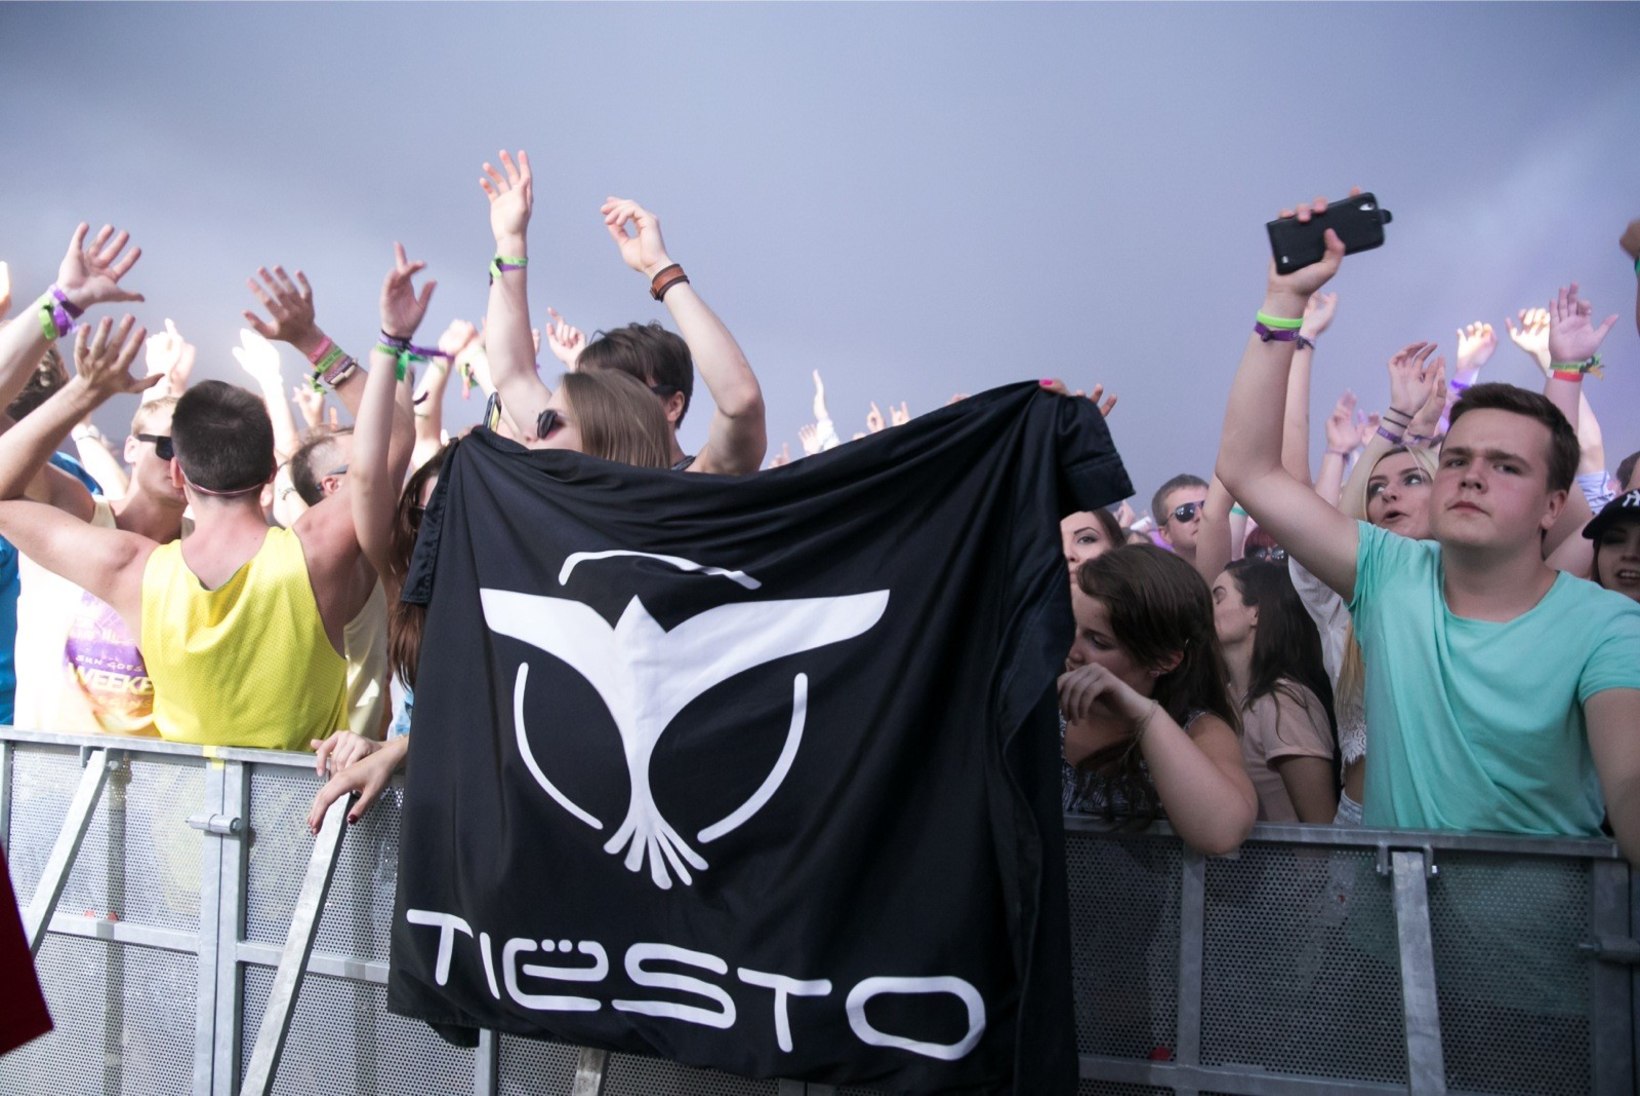 SUUR ÜLEVAADE | Tiësto - memmepoeg, kes on sündinud "õiges" tähtkujus